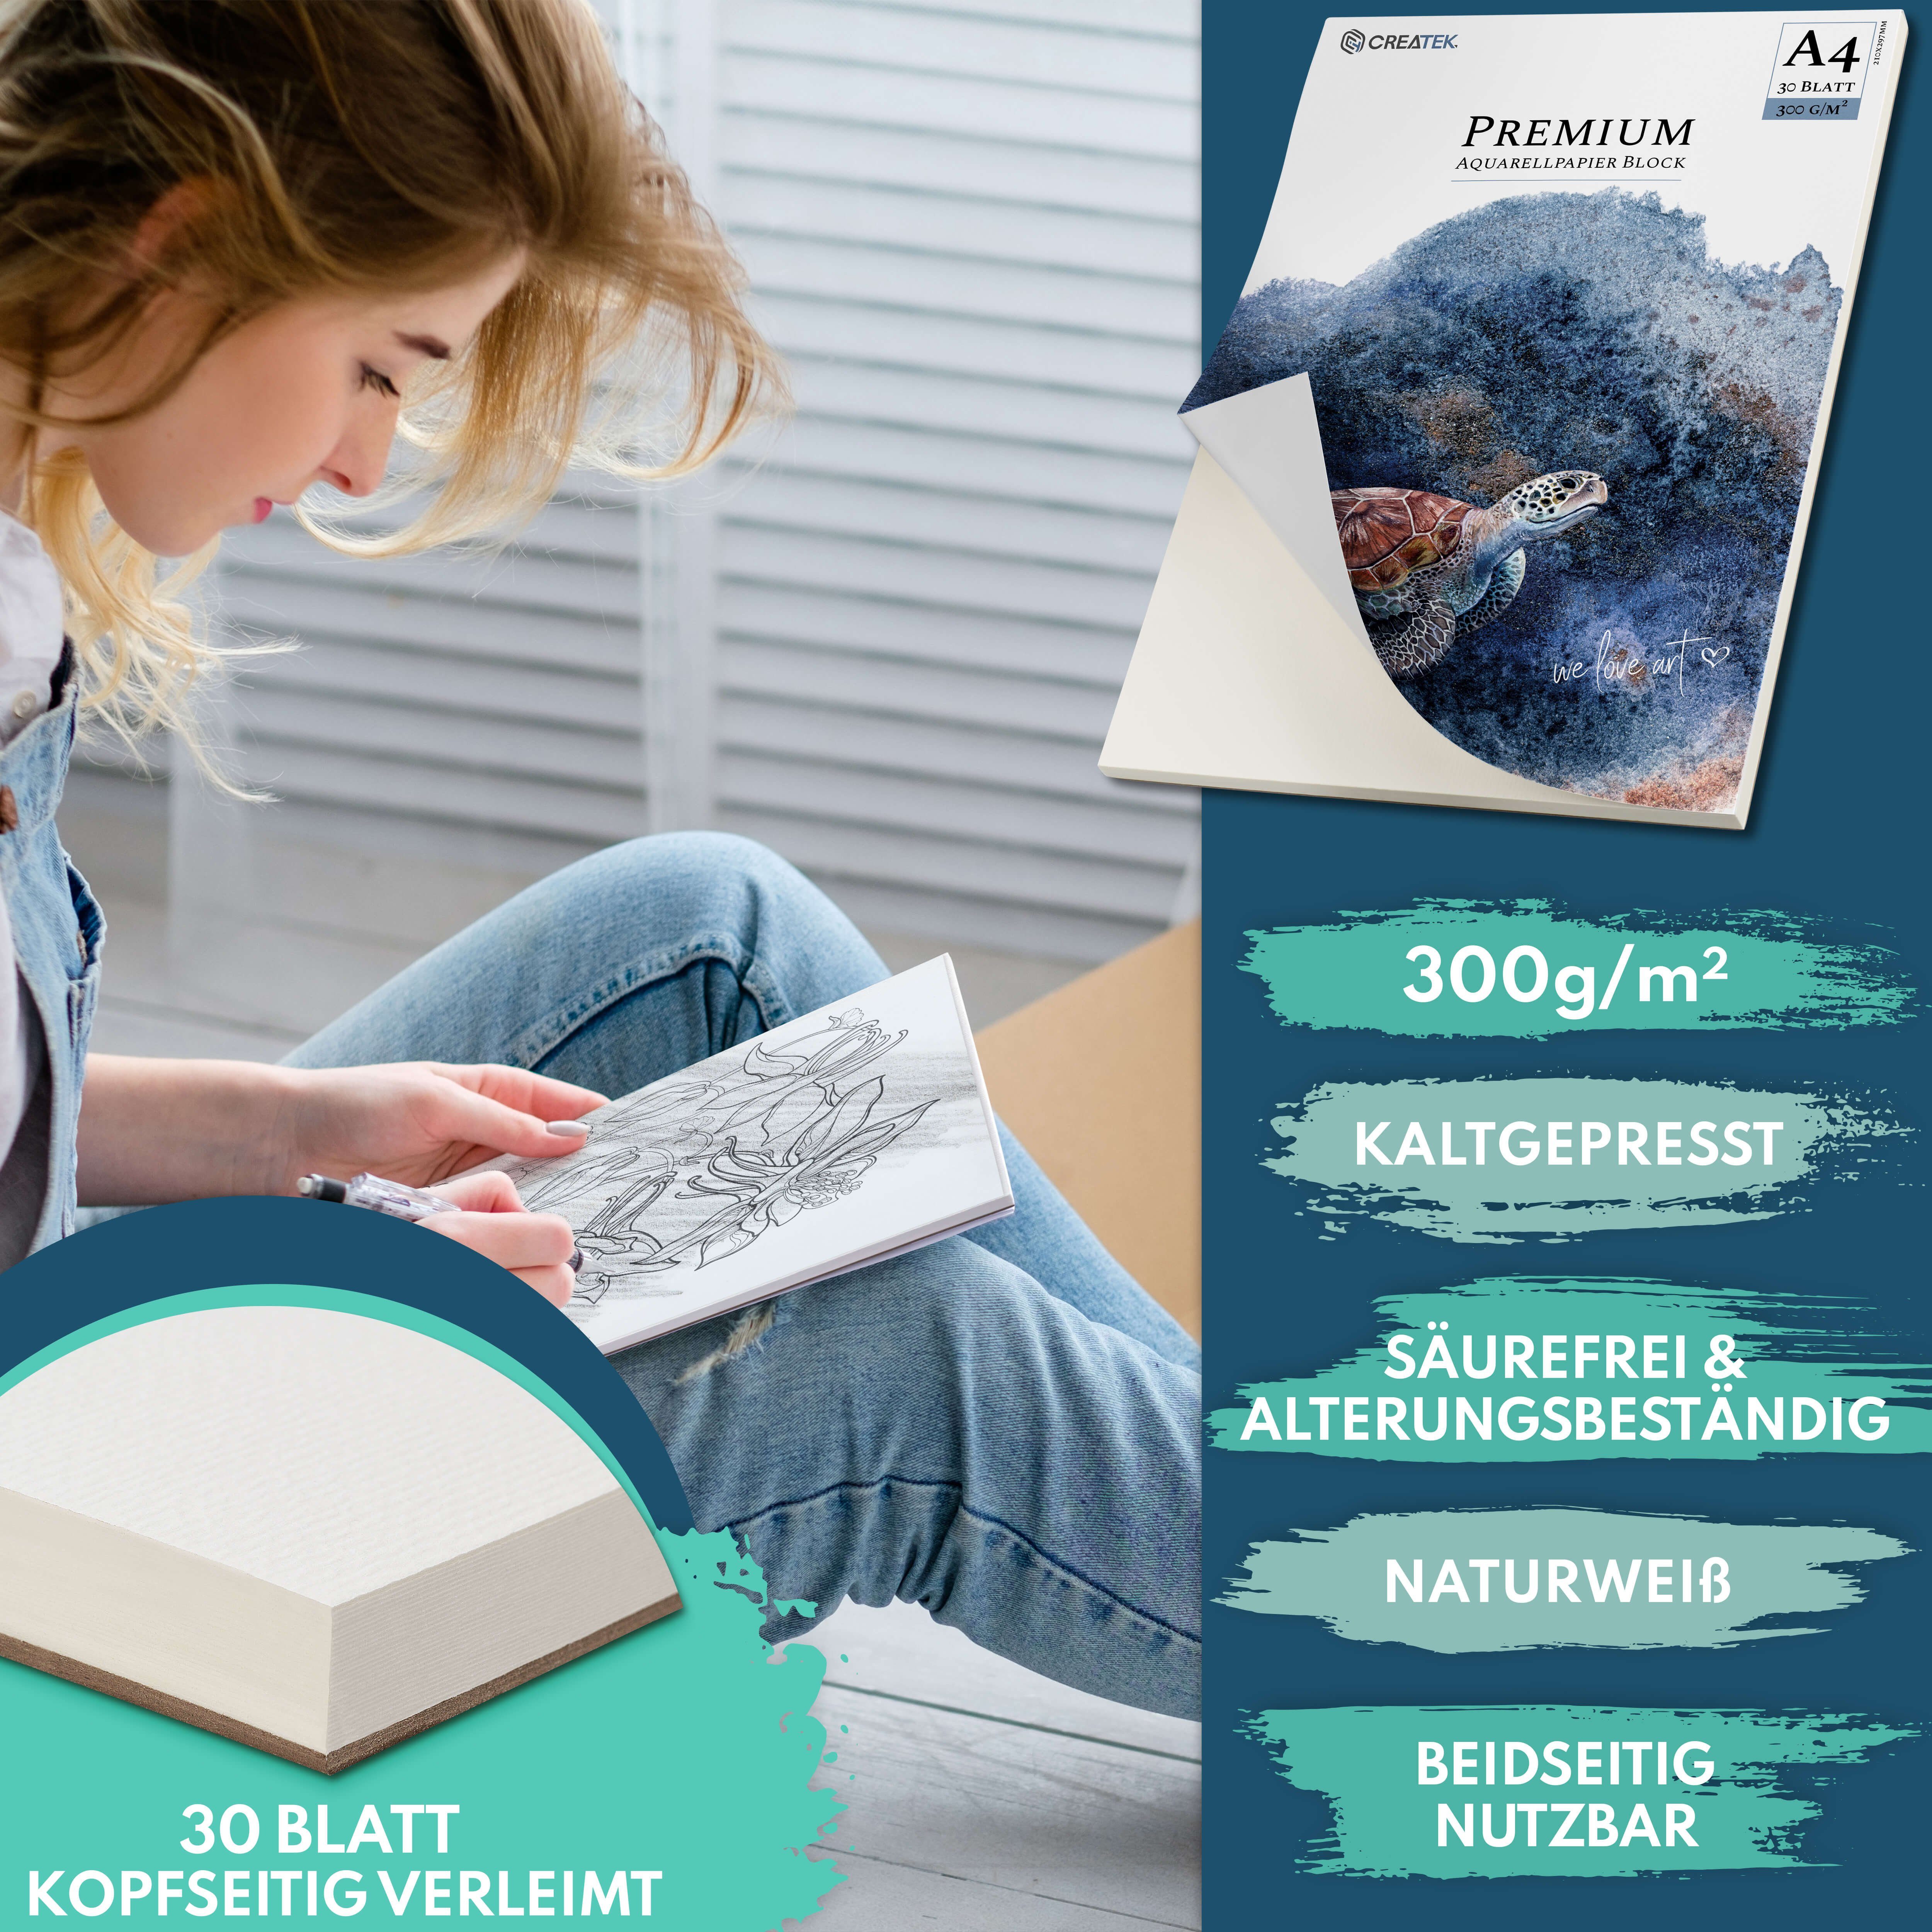 CreaTek Aquarellpapier 300g diverse uvm., STUNDEN & Pinsel Größen - + Qualität MALVORLAGEN Premium VIDEOKURS Bleistift 2 inkl. 400